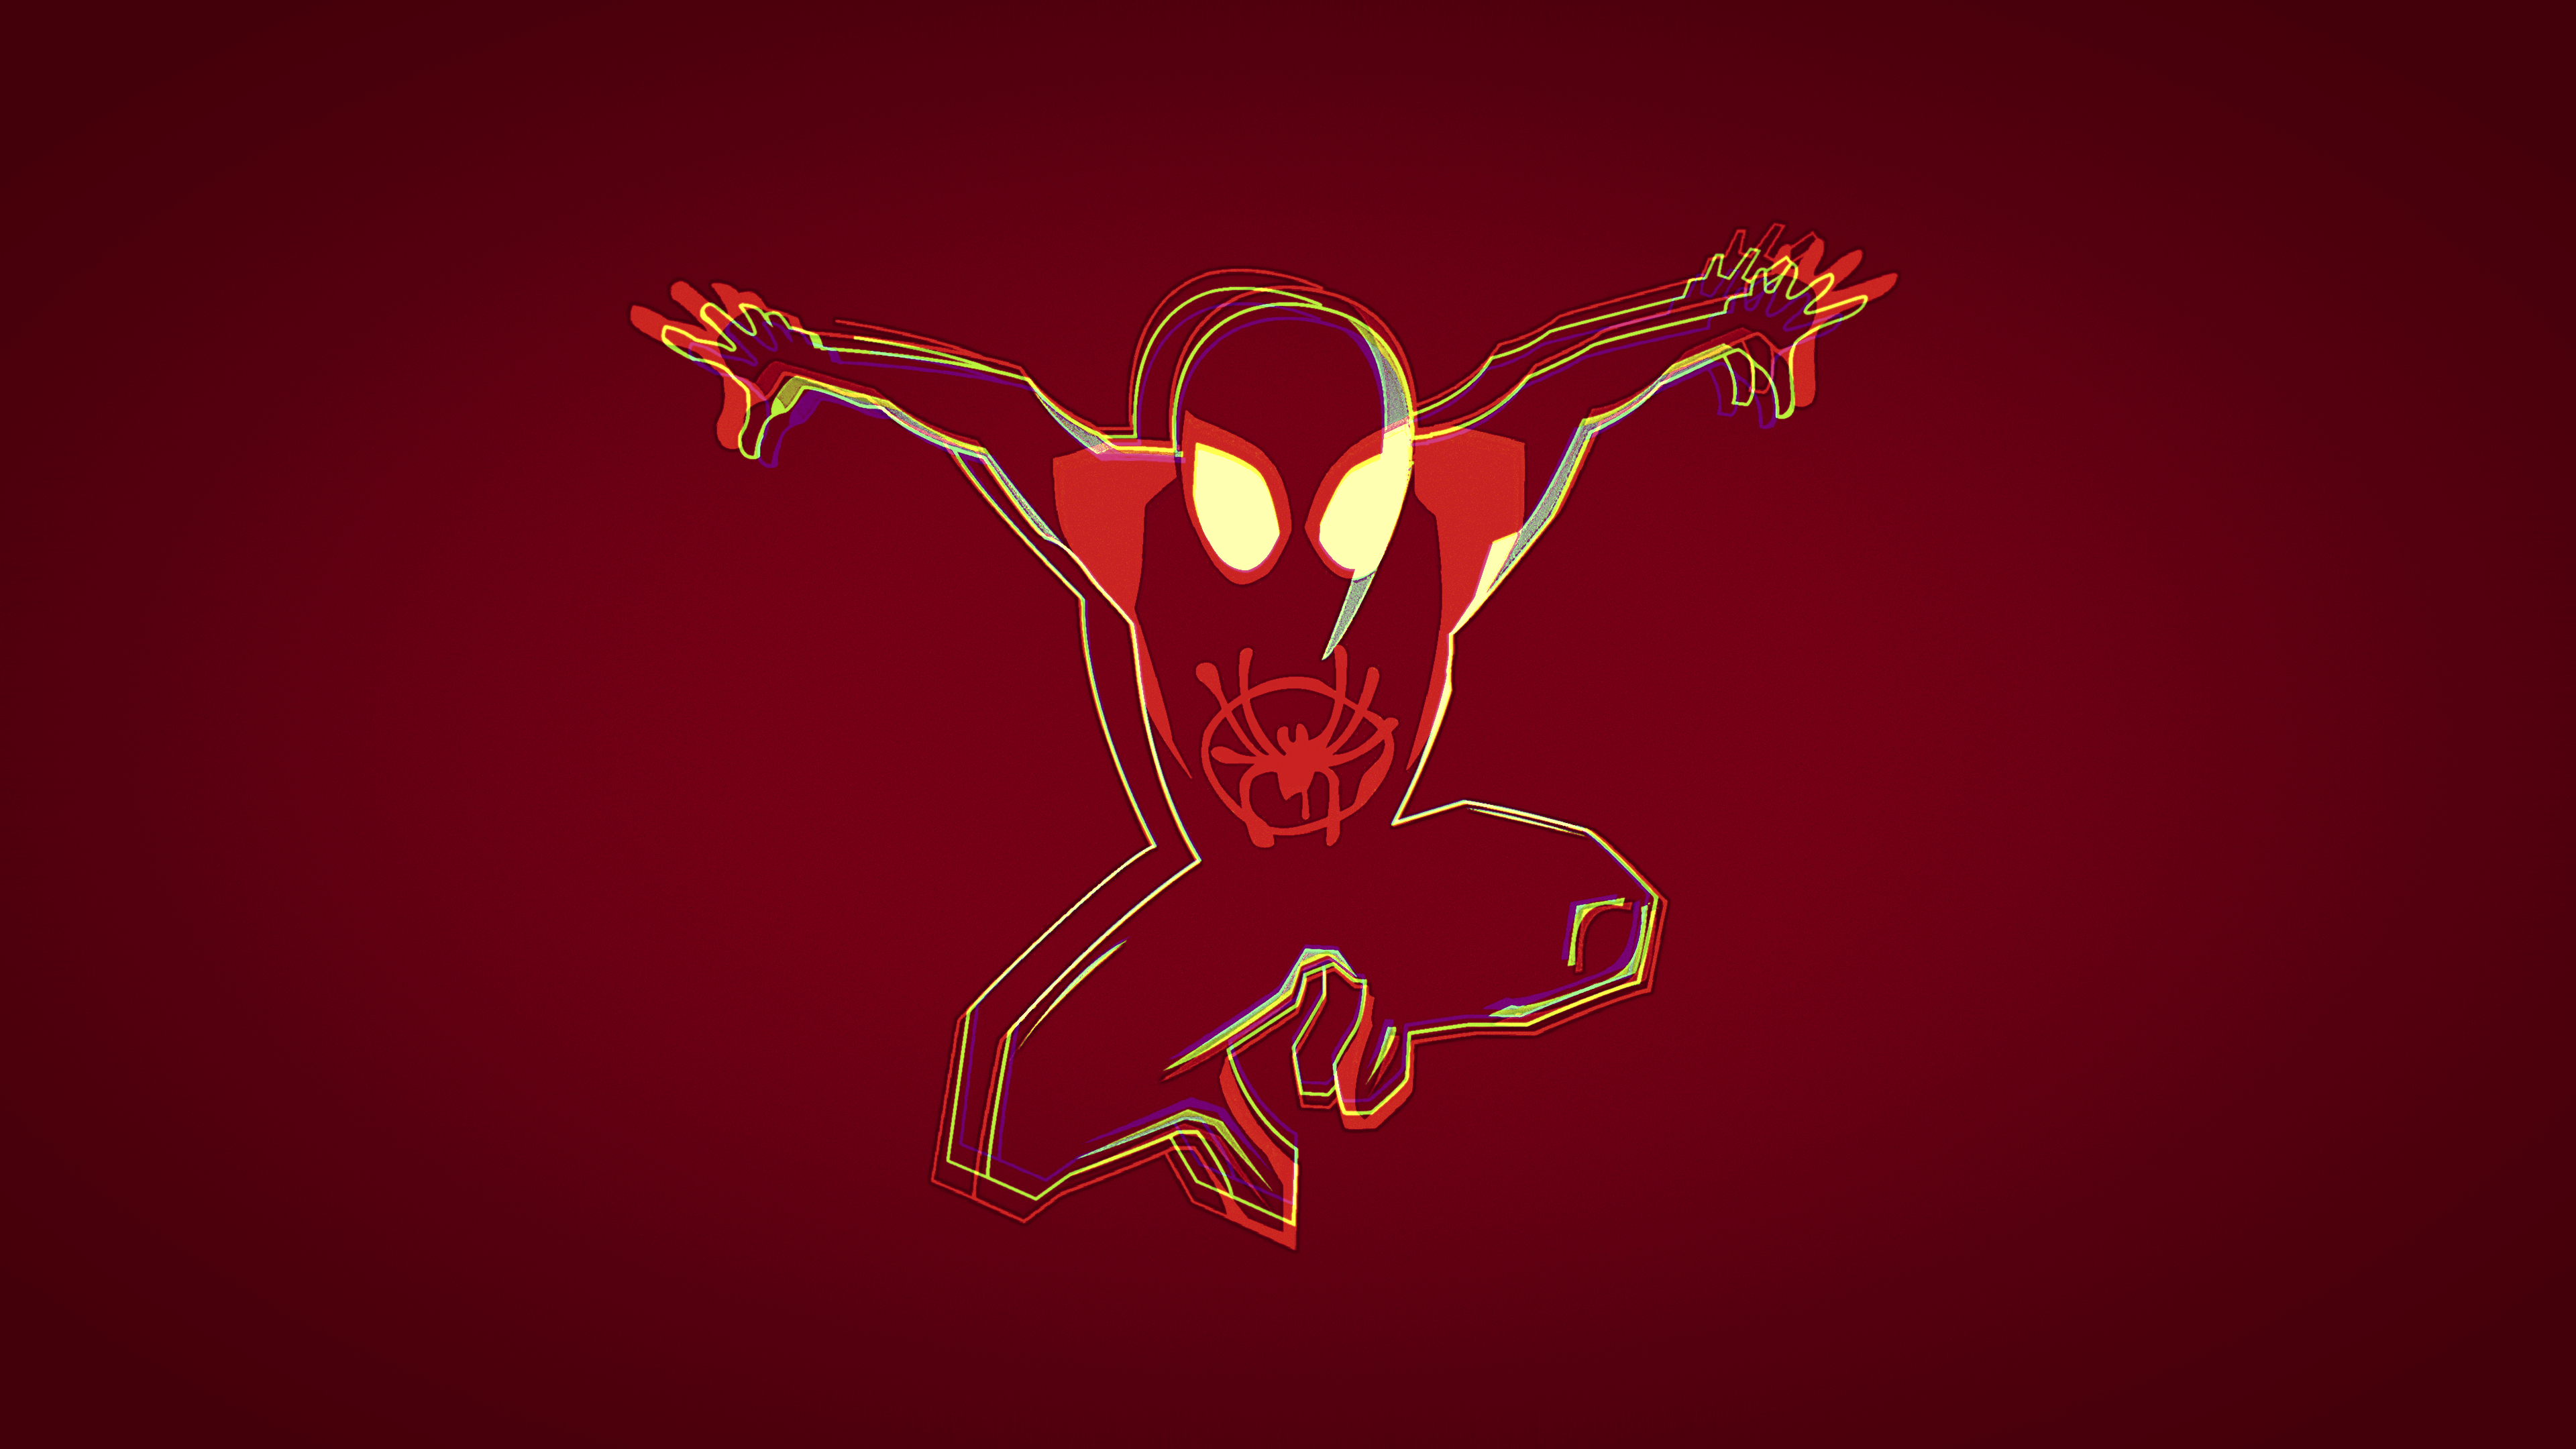 1440x900 Minimalist Spiderman Into The Spider Verse 4k 1440x900